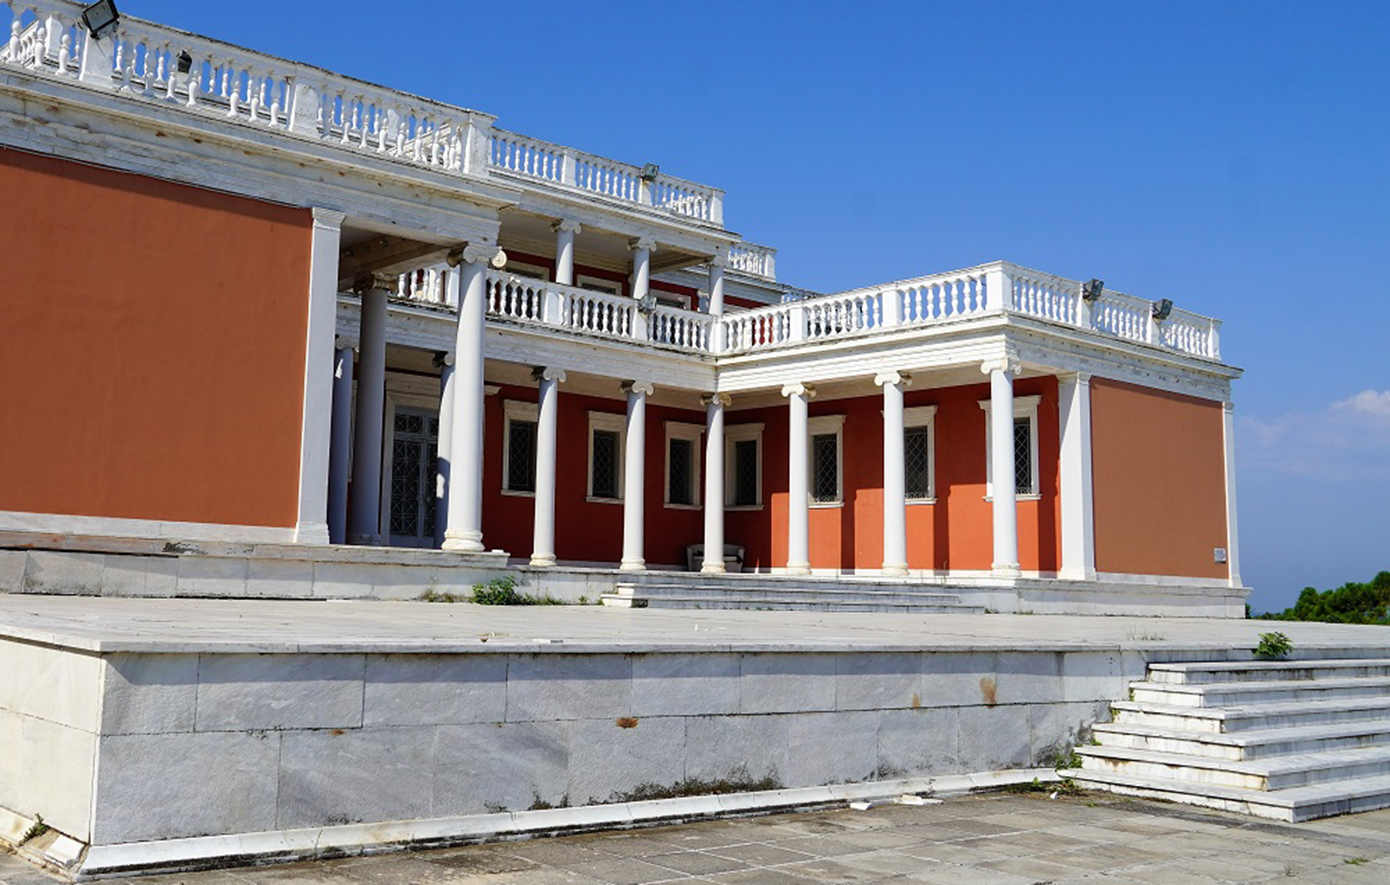 Το Παλατάκι στη Θεσσαλονίκη που μάγεψε με τη θέα του πολιτικούς, βασιλείς και καλλιτέχνες από όλο τον κόσμο